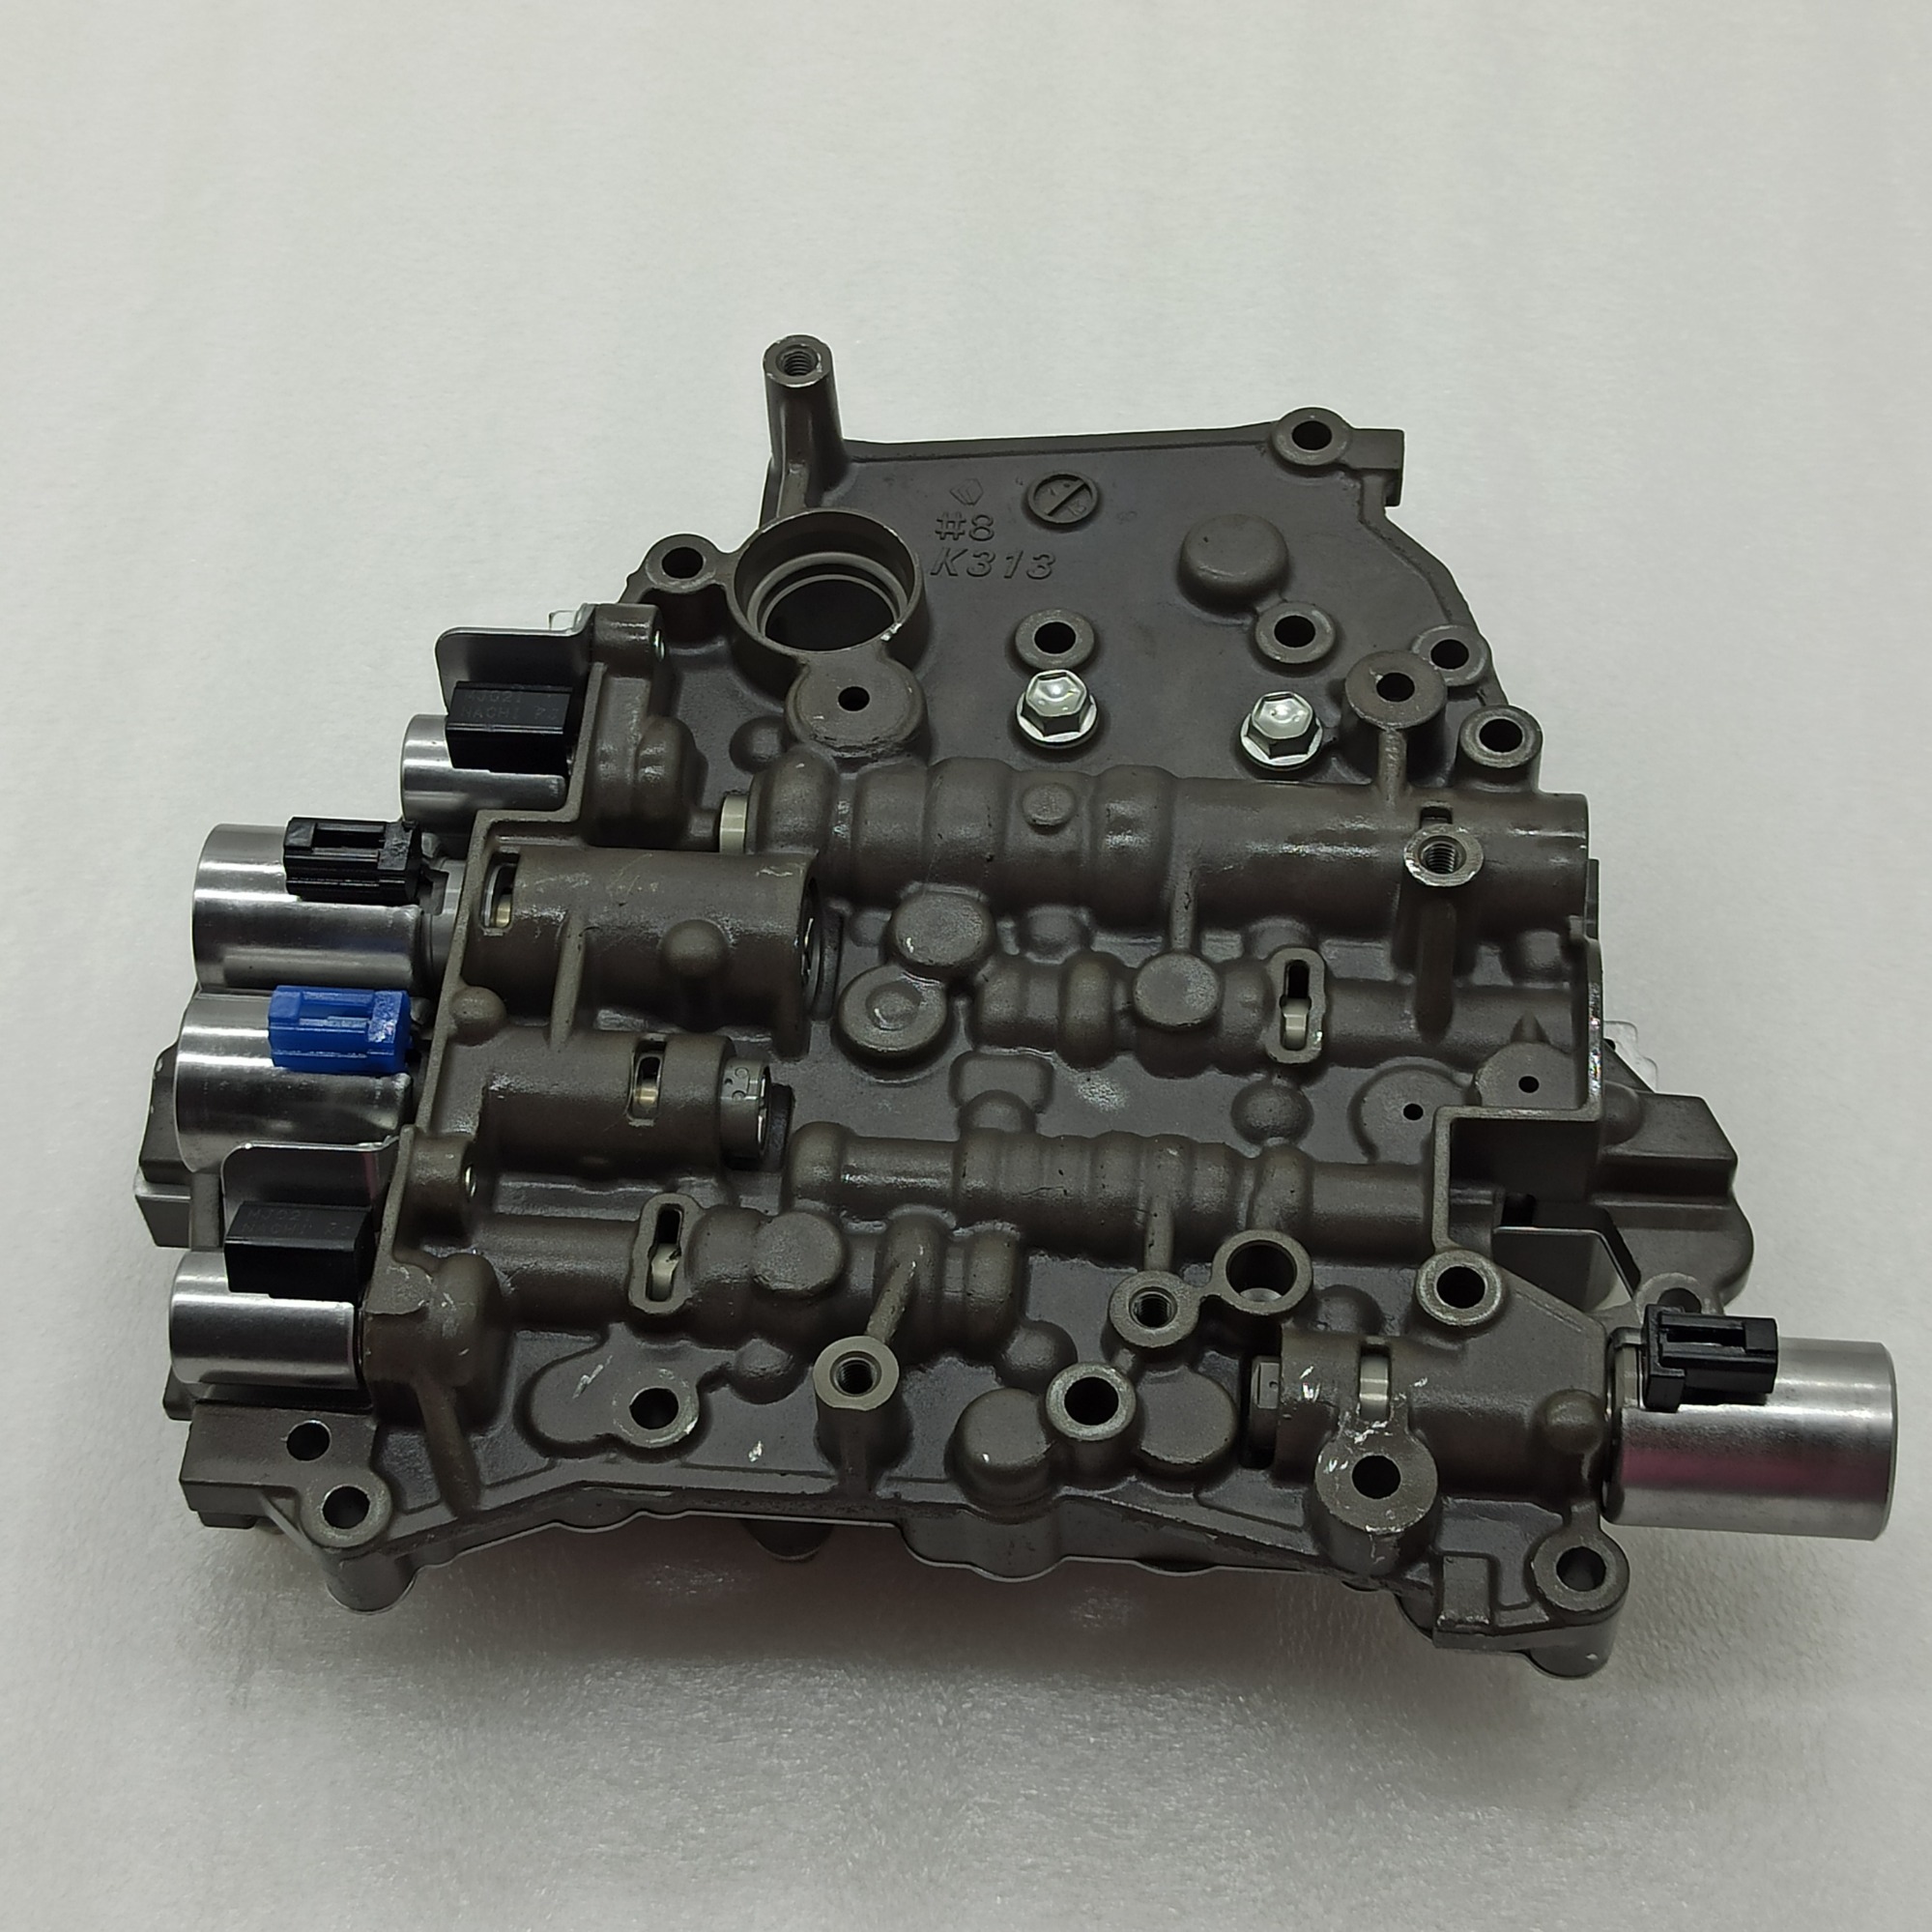 K313-0016-FN K313 CVT Transmission Solenoid Valve Body For /Toyata FROM NEW TRANS